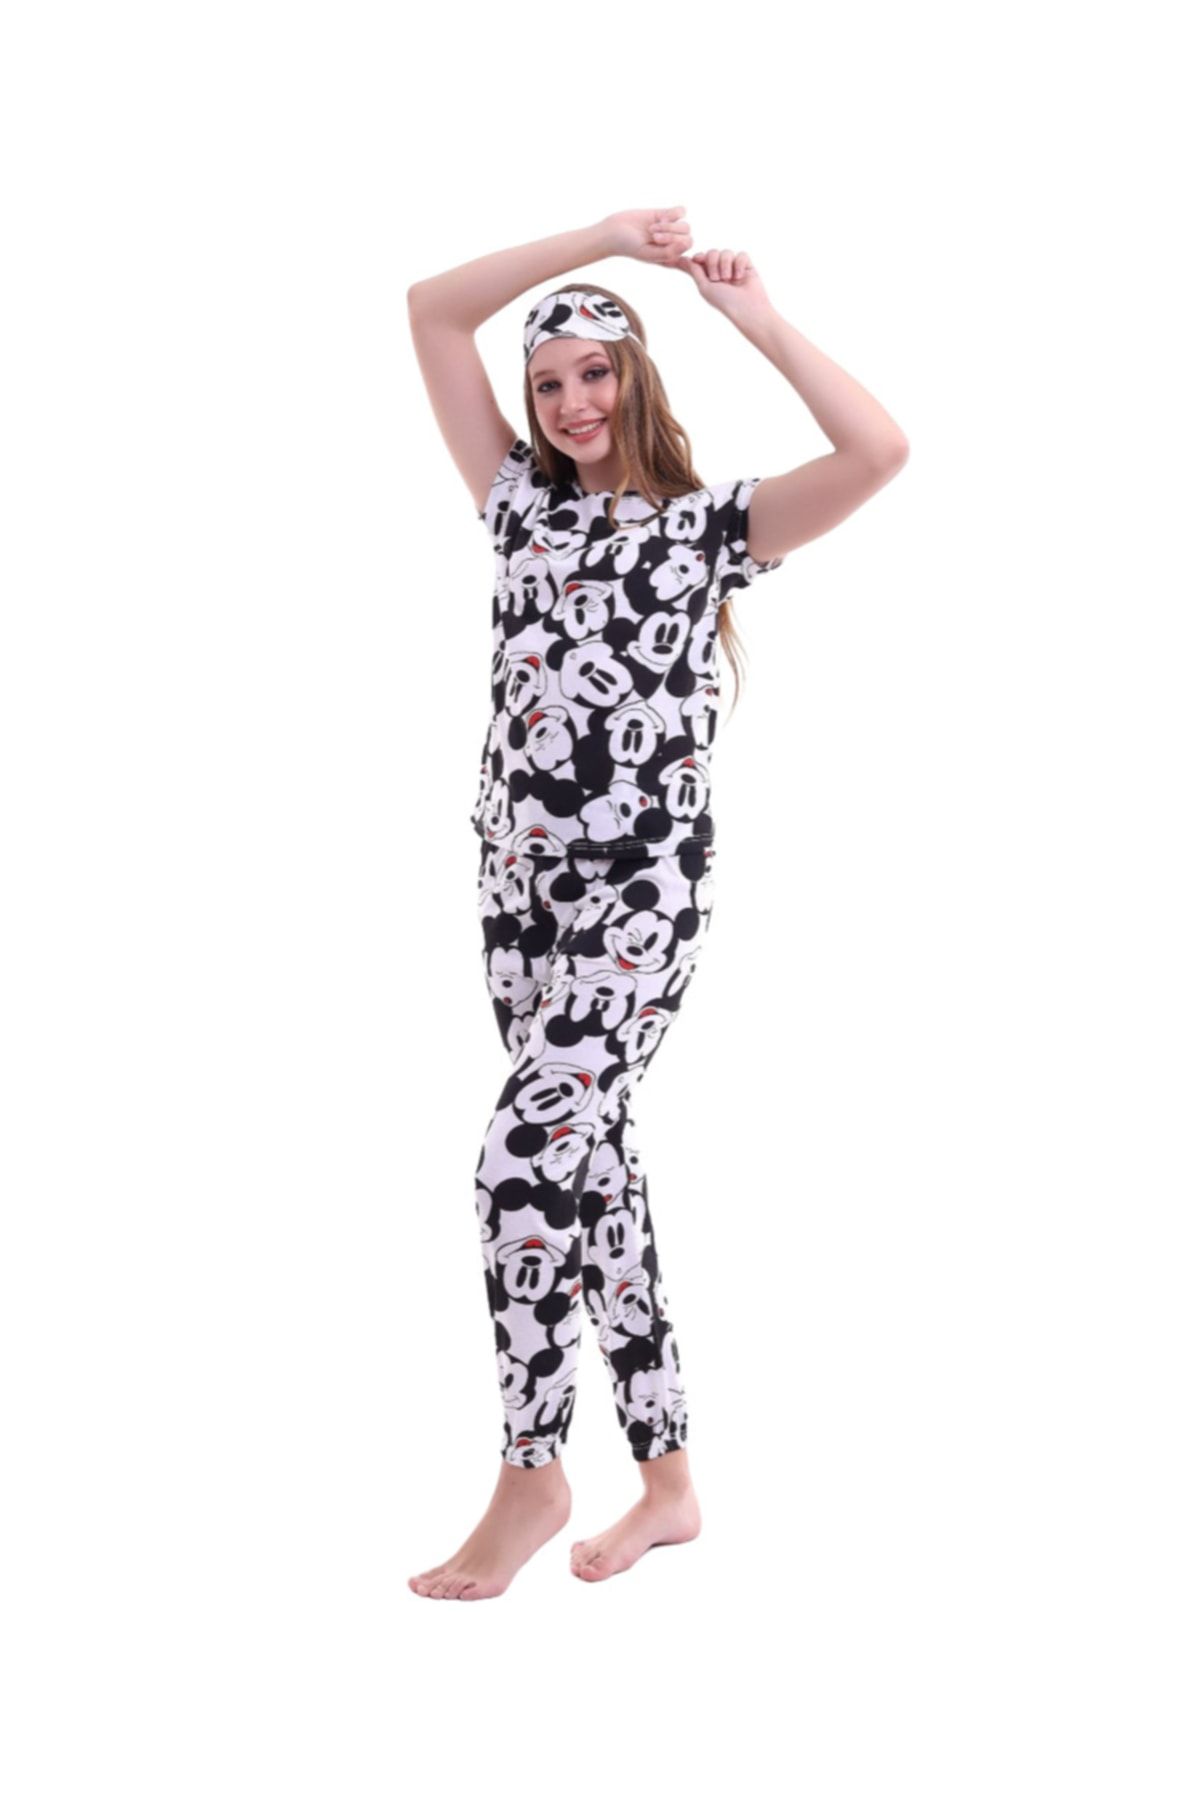 Lolliboomkids Kadın Genç Siyah Beyaz Baskılı Mickey Desen Pijama Takımı Göz Bandı Dahil 3'lü Takım